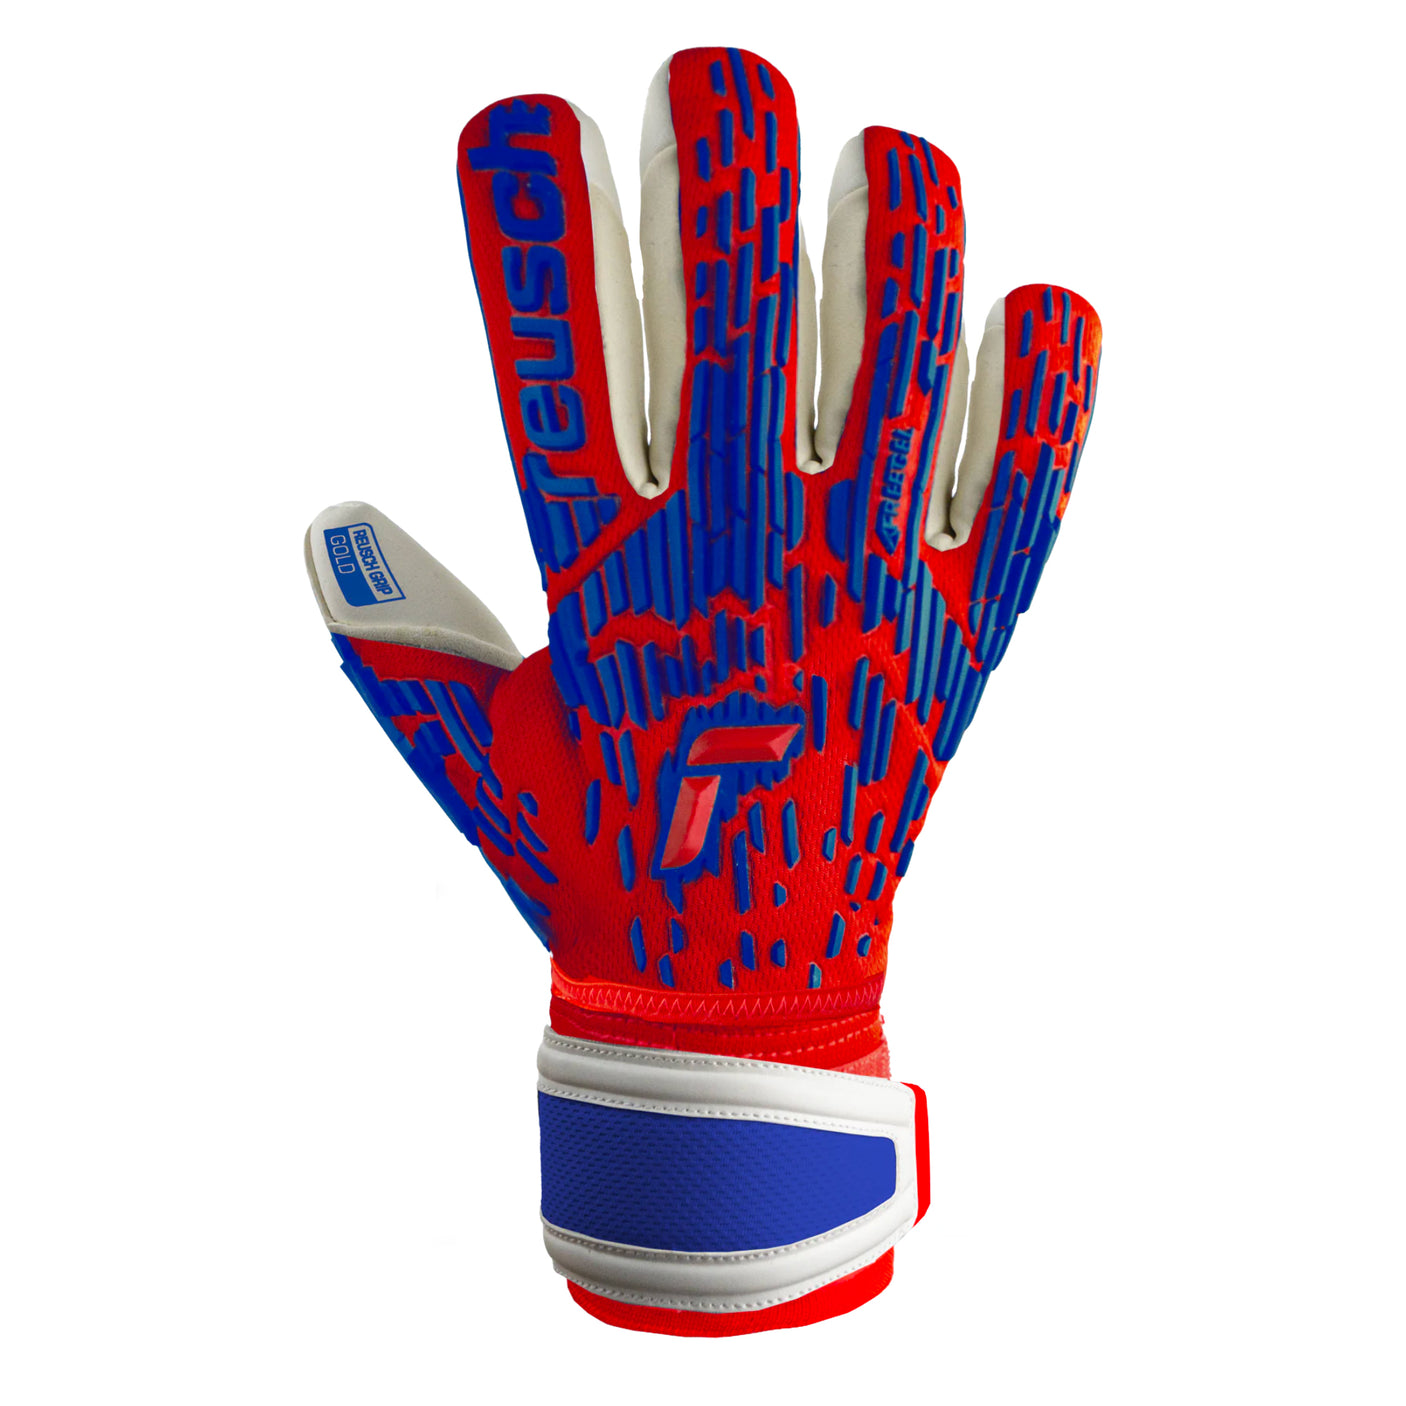 Reusch Men's Attrakt Freegel Gold Fingersave Goalkeeper Gloves Red/Blue Front